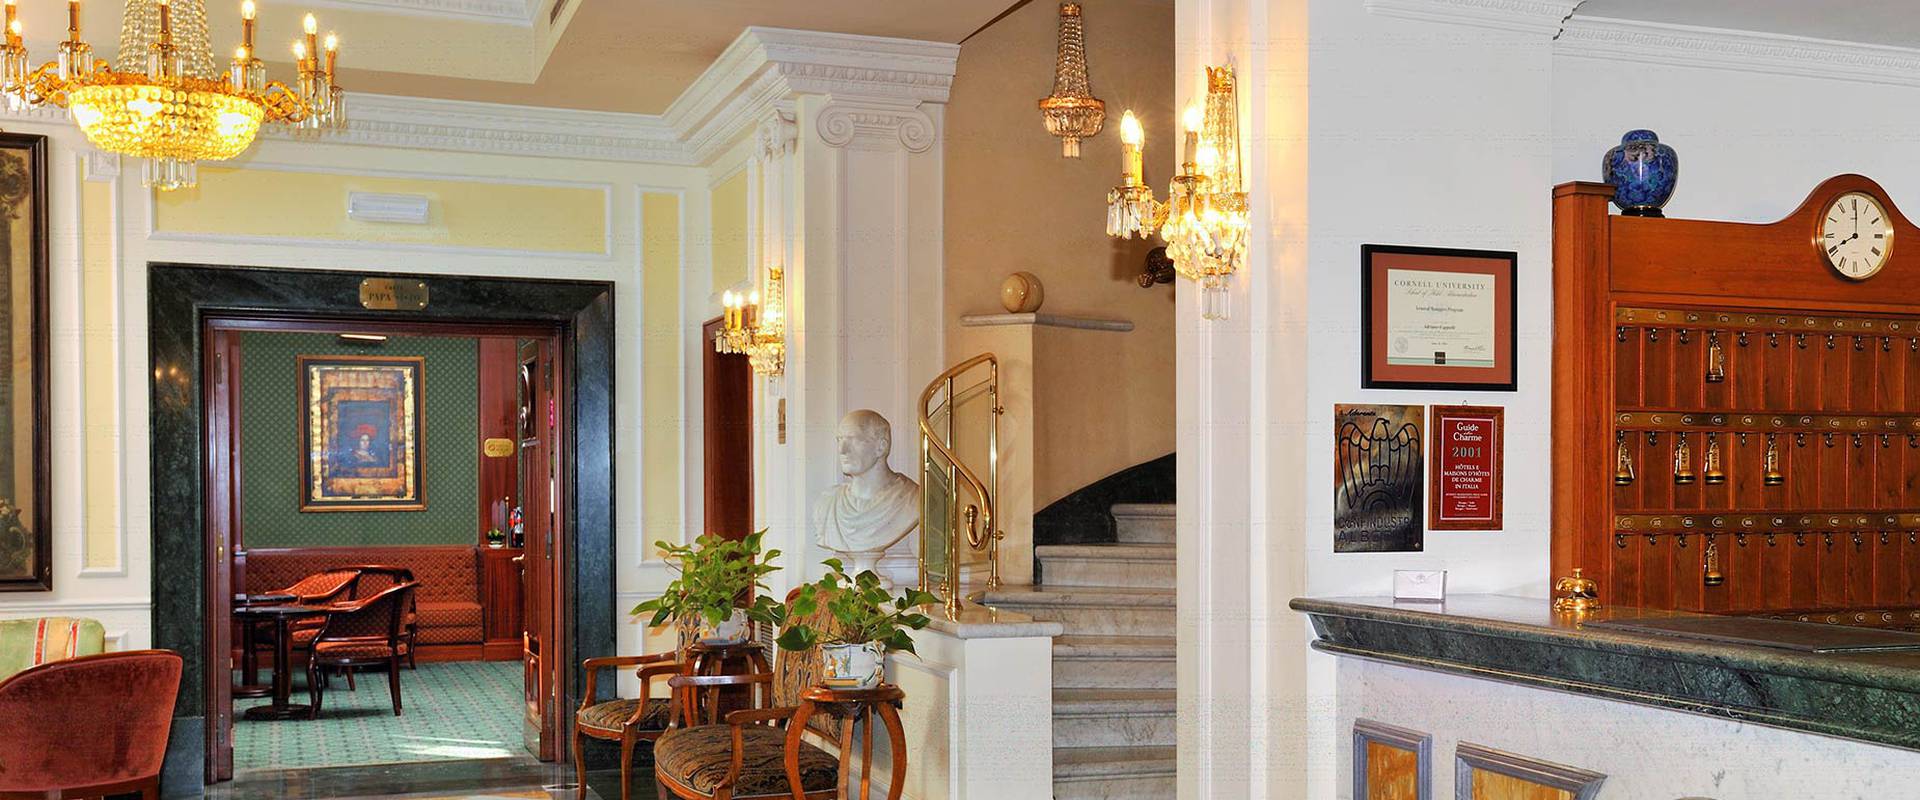 ДОБРО ПОЖАЛОВАТЬ В MECENATE PALACE HOTEL Mecenate Palace Hotel Рим